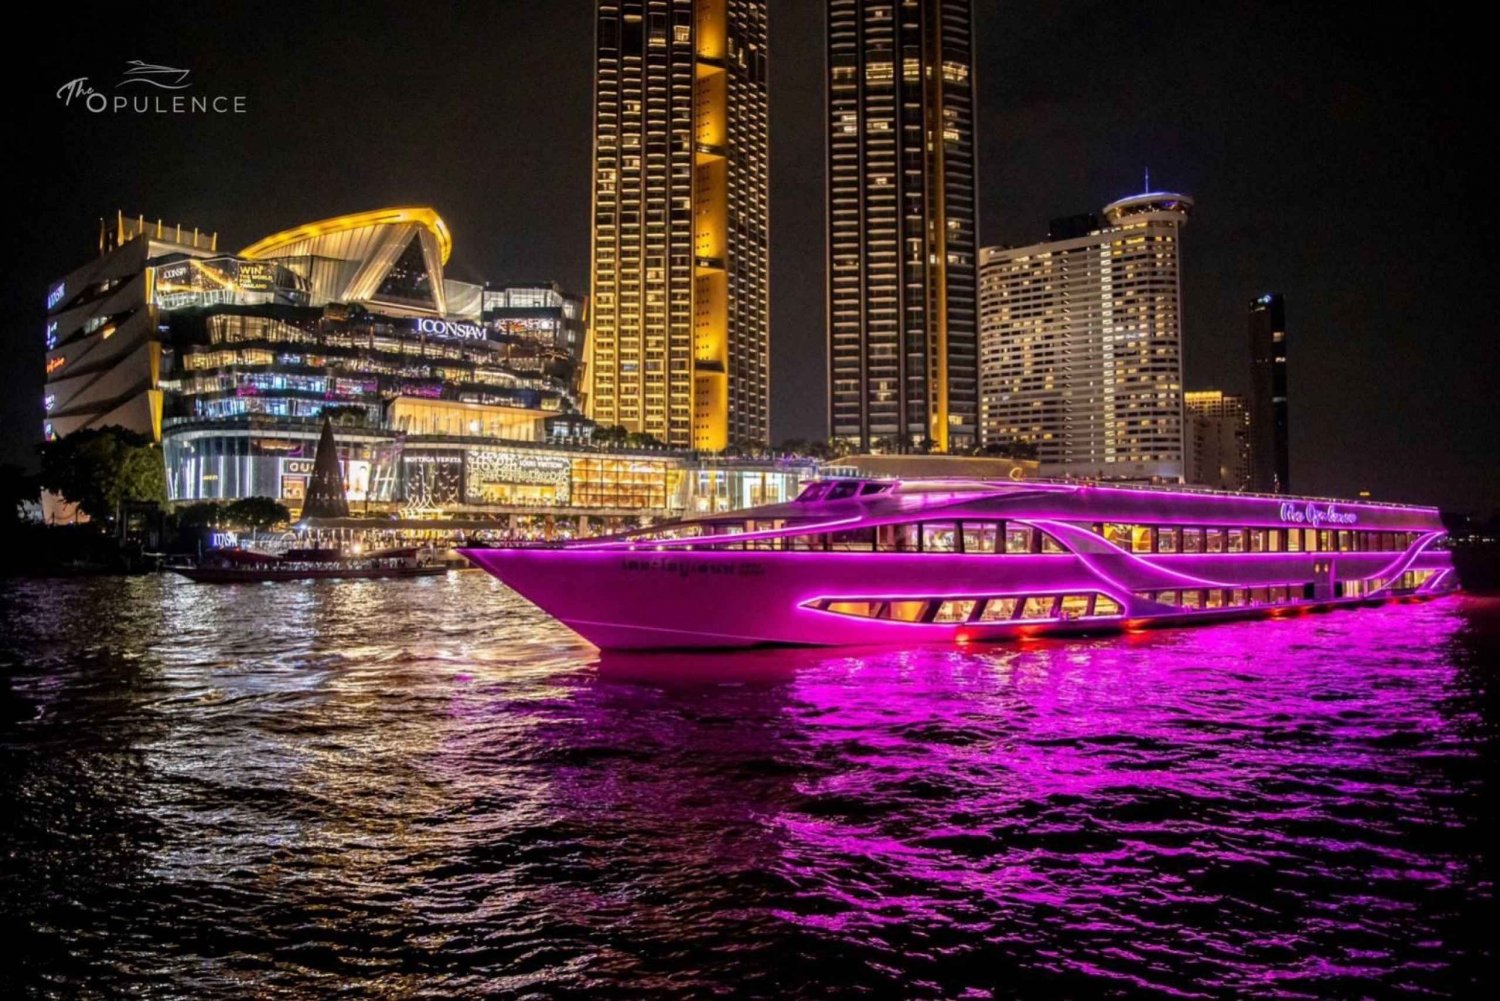 Bangkok: Opulence Cena Crucero con Espectáculo de Danza